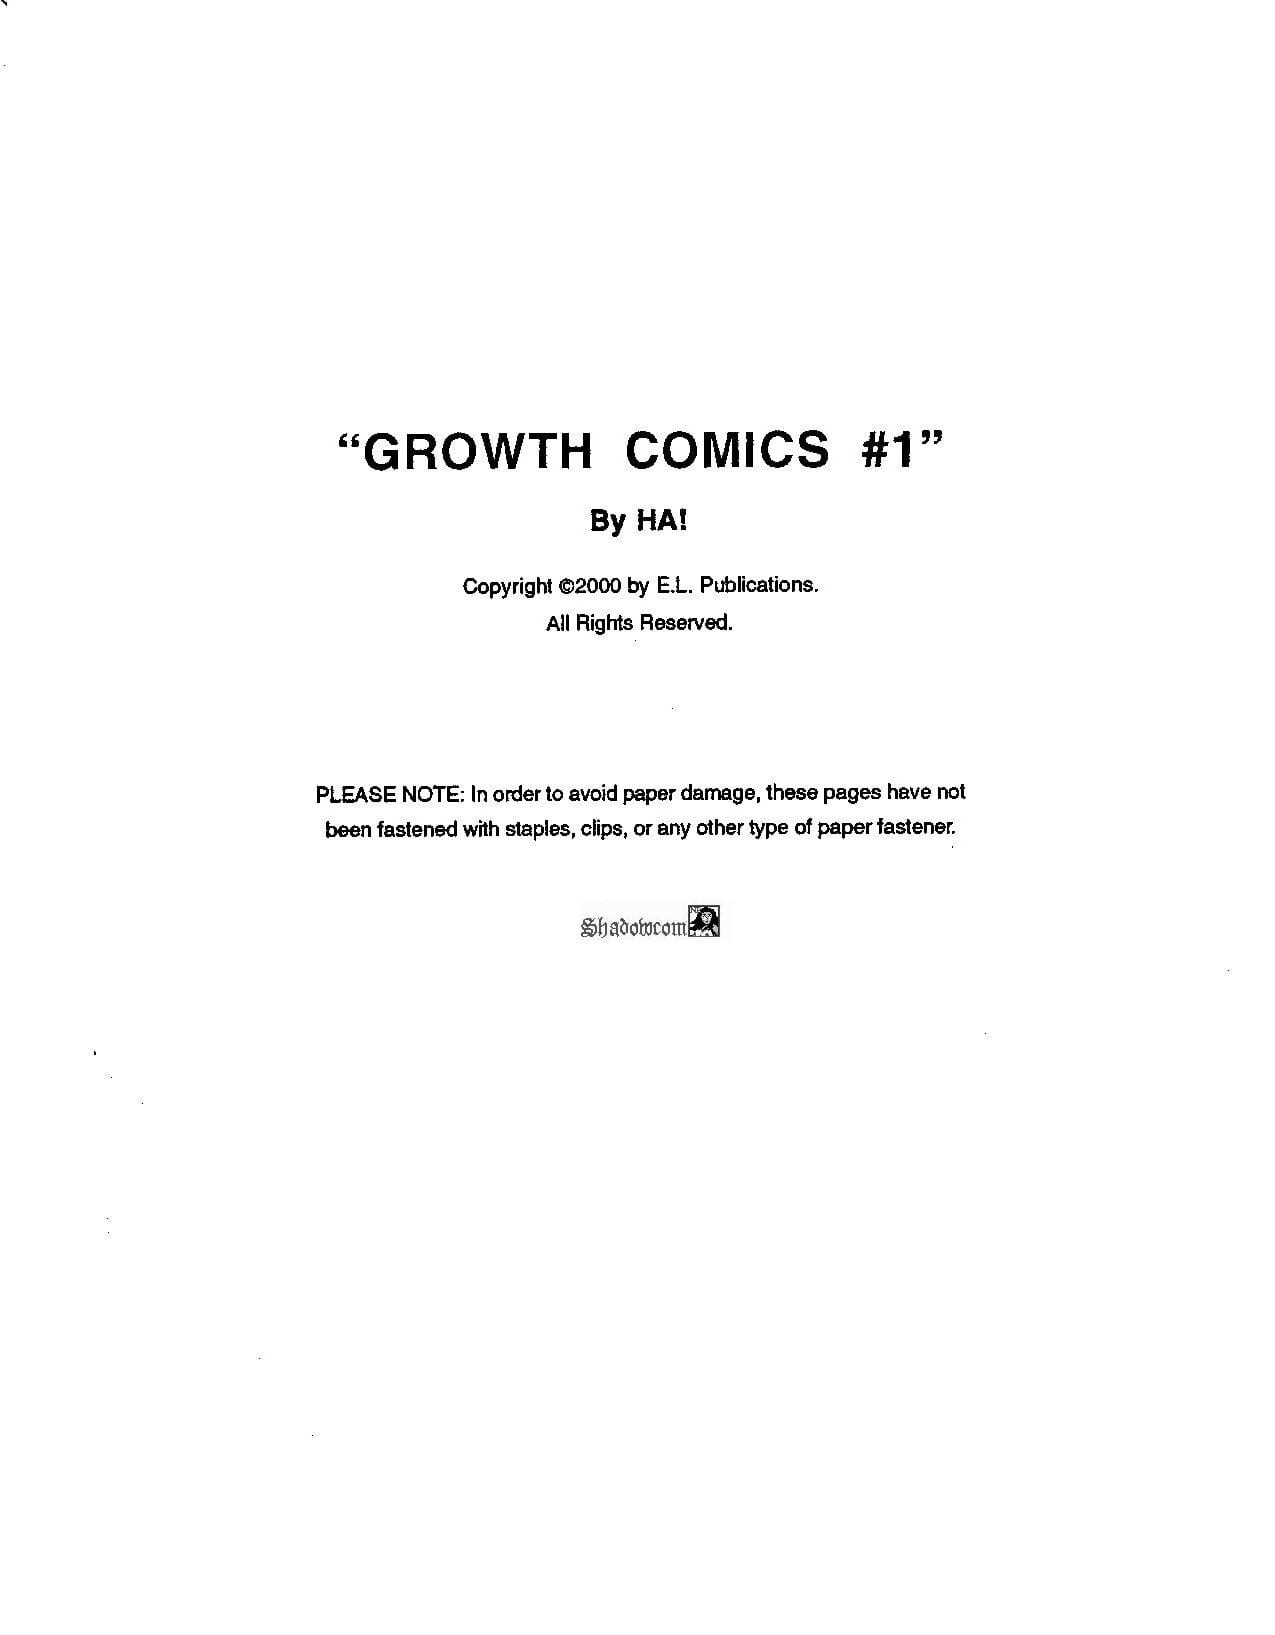 Wachstum comics #1 illustriert :Comic: Geschichte #1 page 1